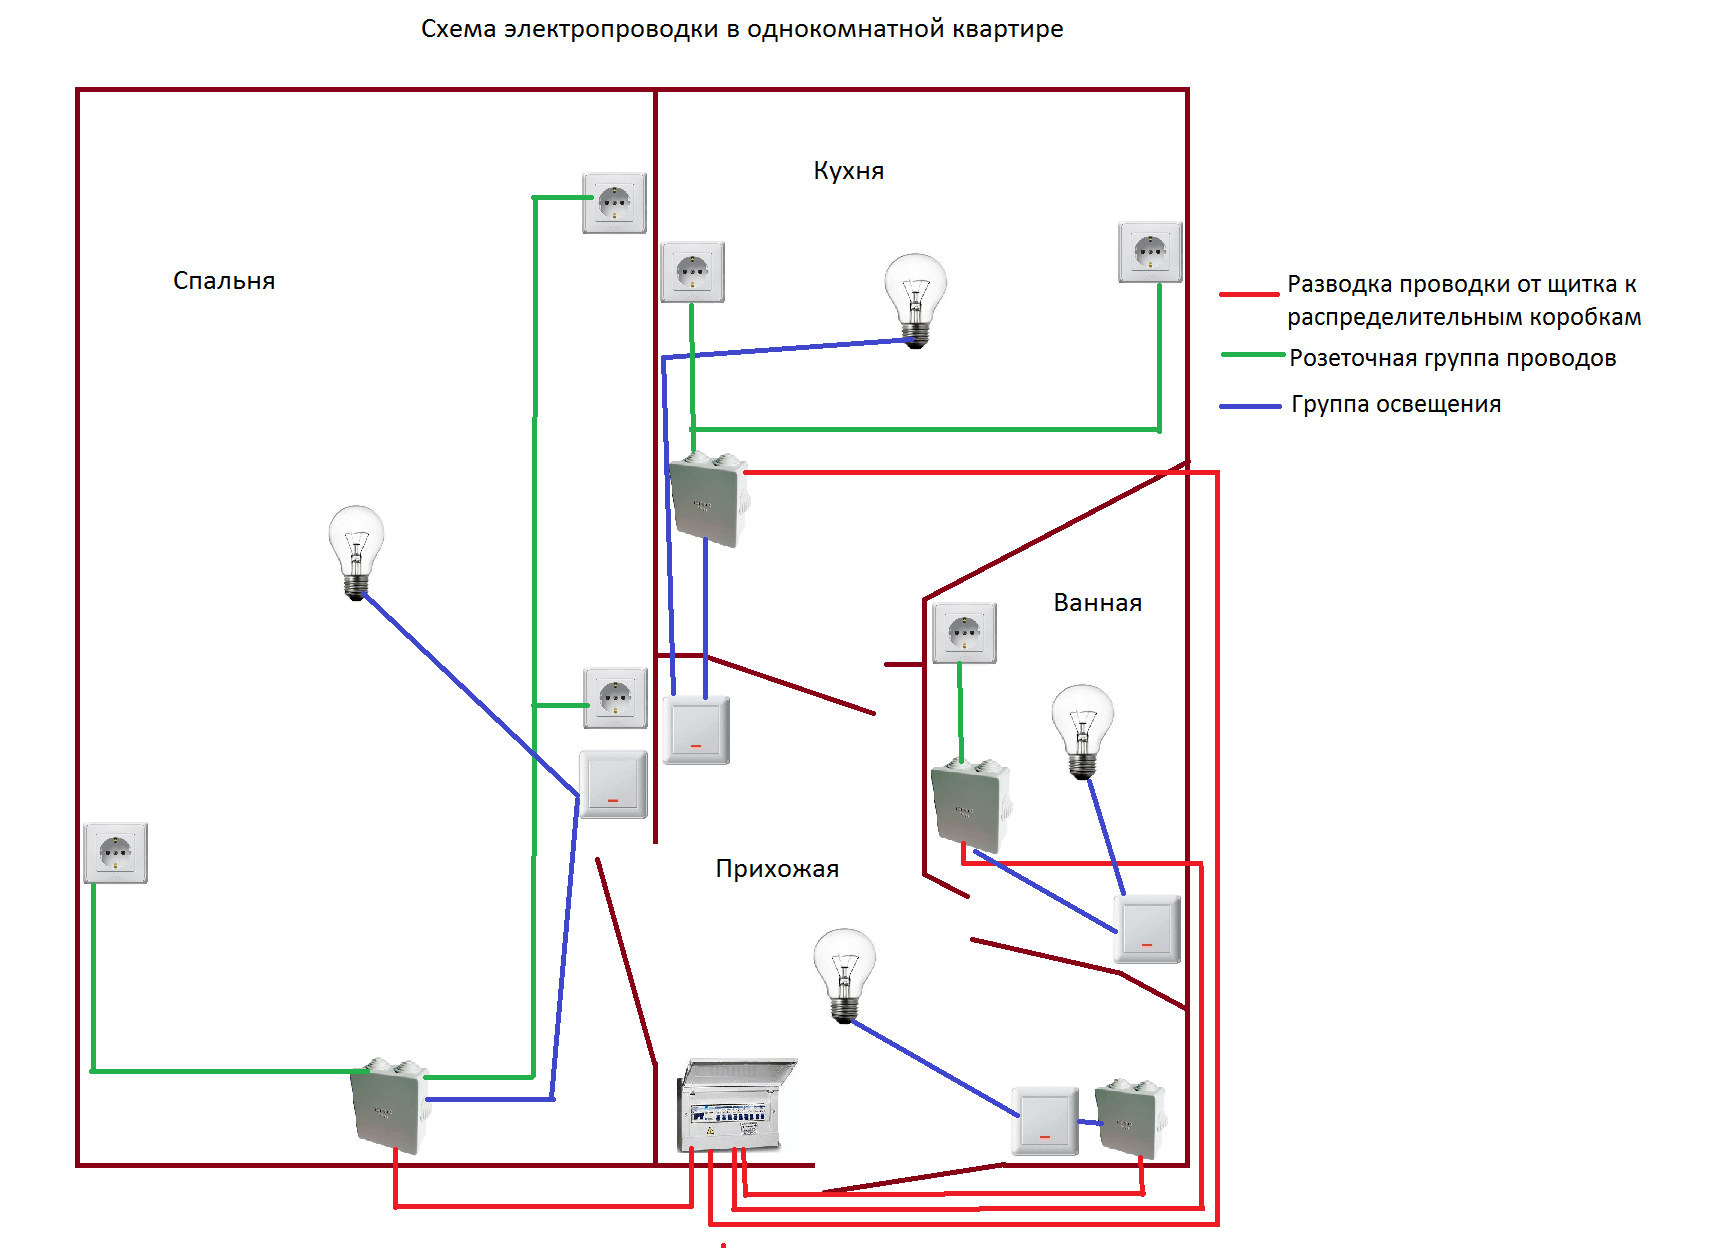 Электропроводка в жилом помещении. Схема проводки электричества в квартире 1 комнатной. Схема присоединения проводов в квартирной проводки. Схема разводки электропроводки в квартире 1 комнатной. Схема разводки проводки в однокомнатной квартире.